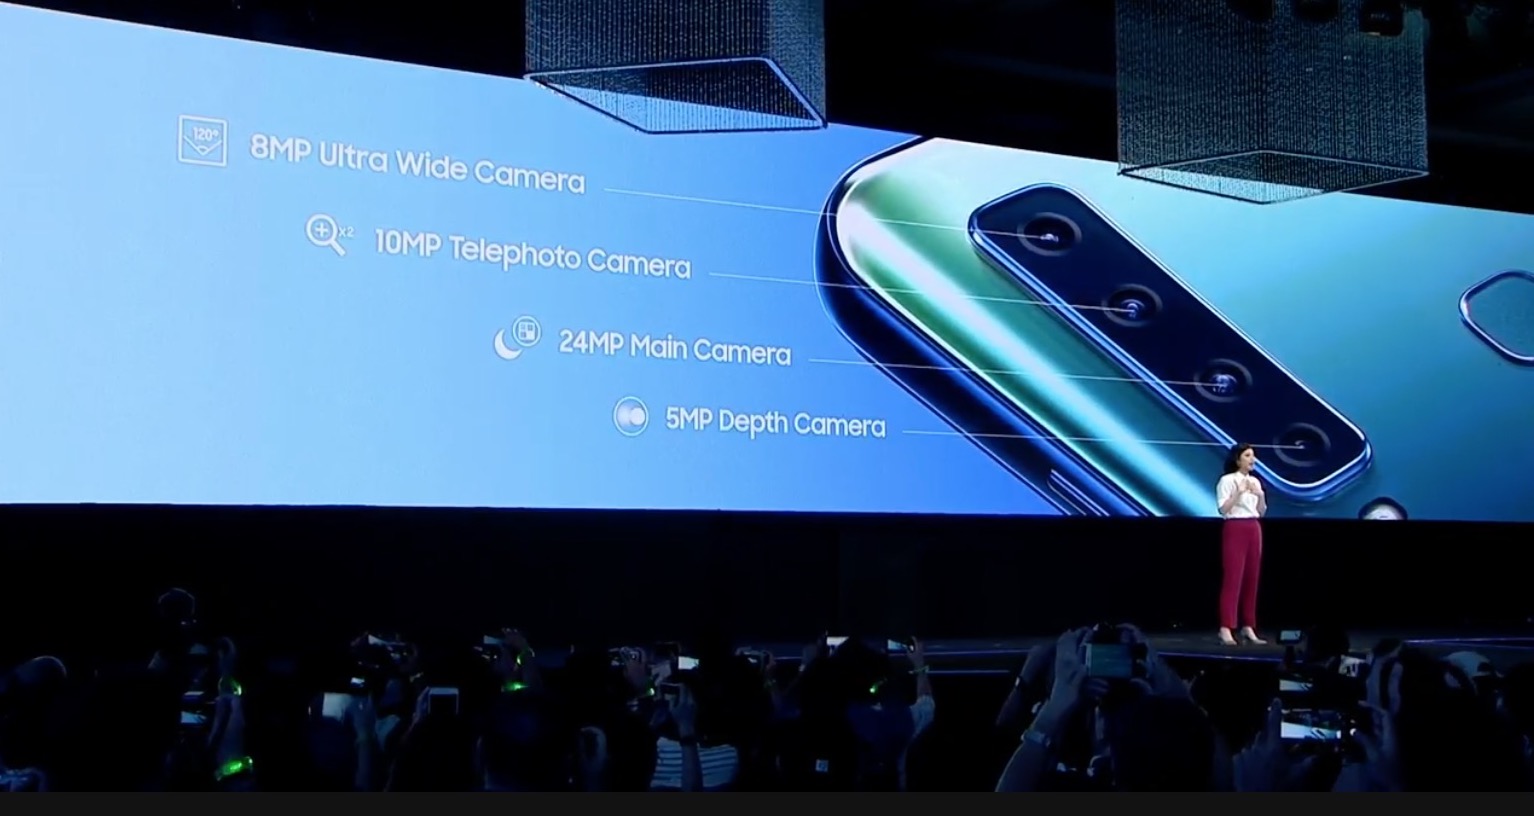 Samsung chính thức ra mắt Galaxy A9 (2018) với
4 camera sau, Snapdragon 660, 6/8GB RAM, pin 3800mAh